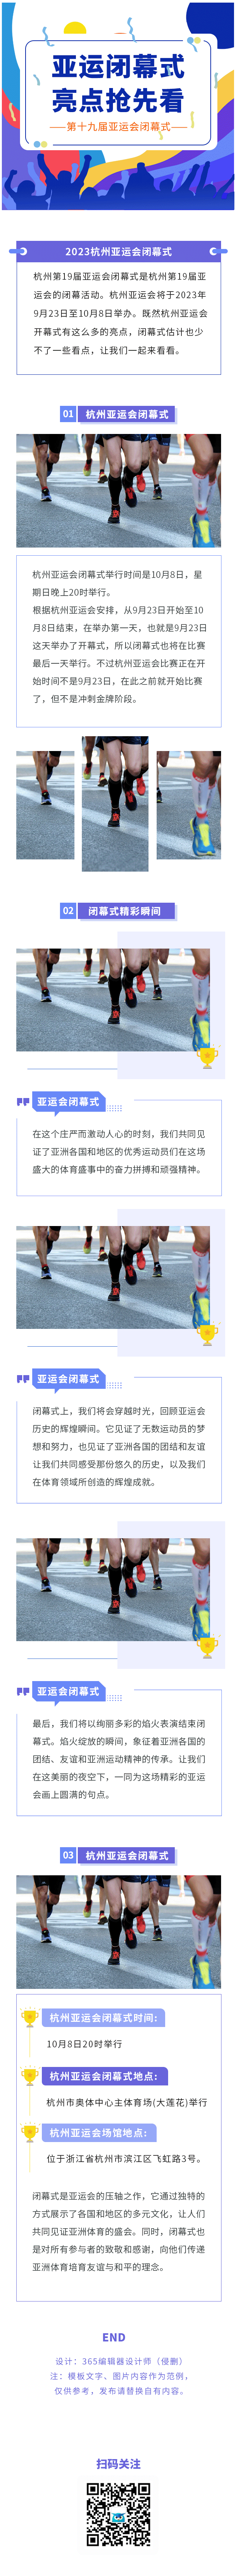 杭州亚运会亚运会闭幕式体育运动会精彩瞬间奖牌